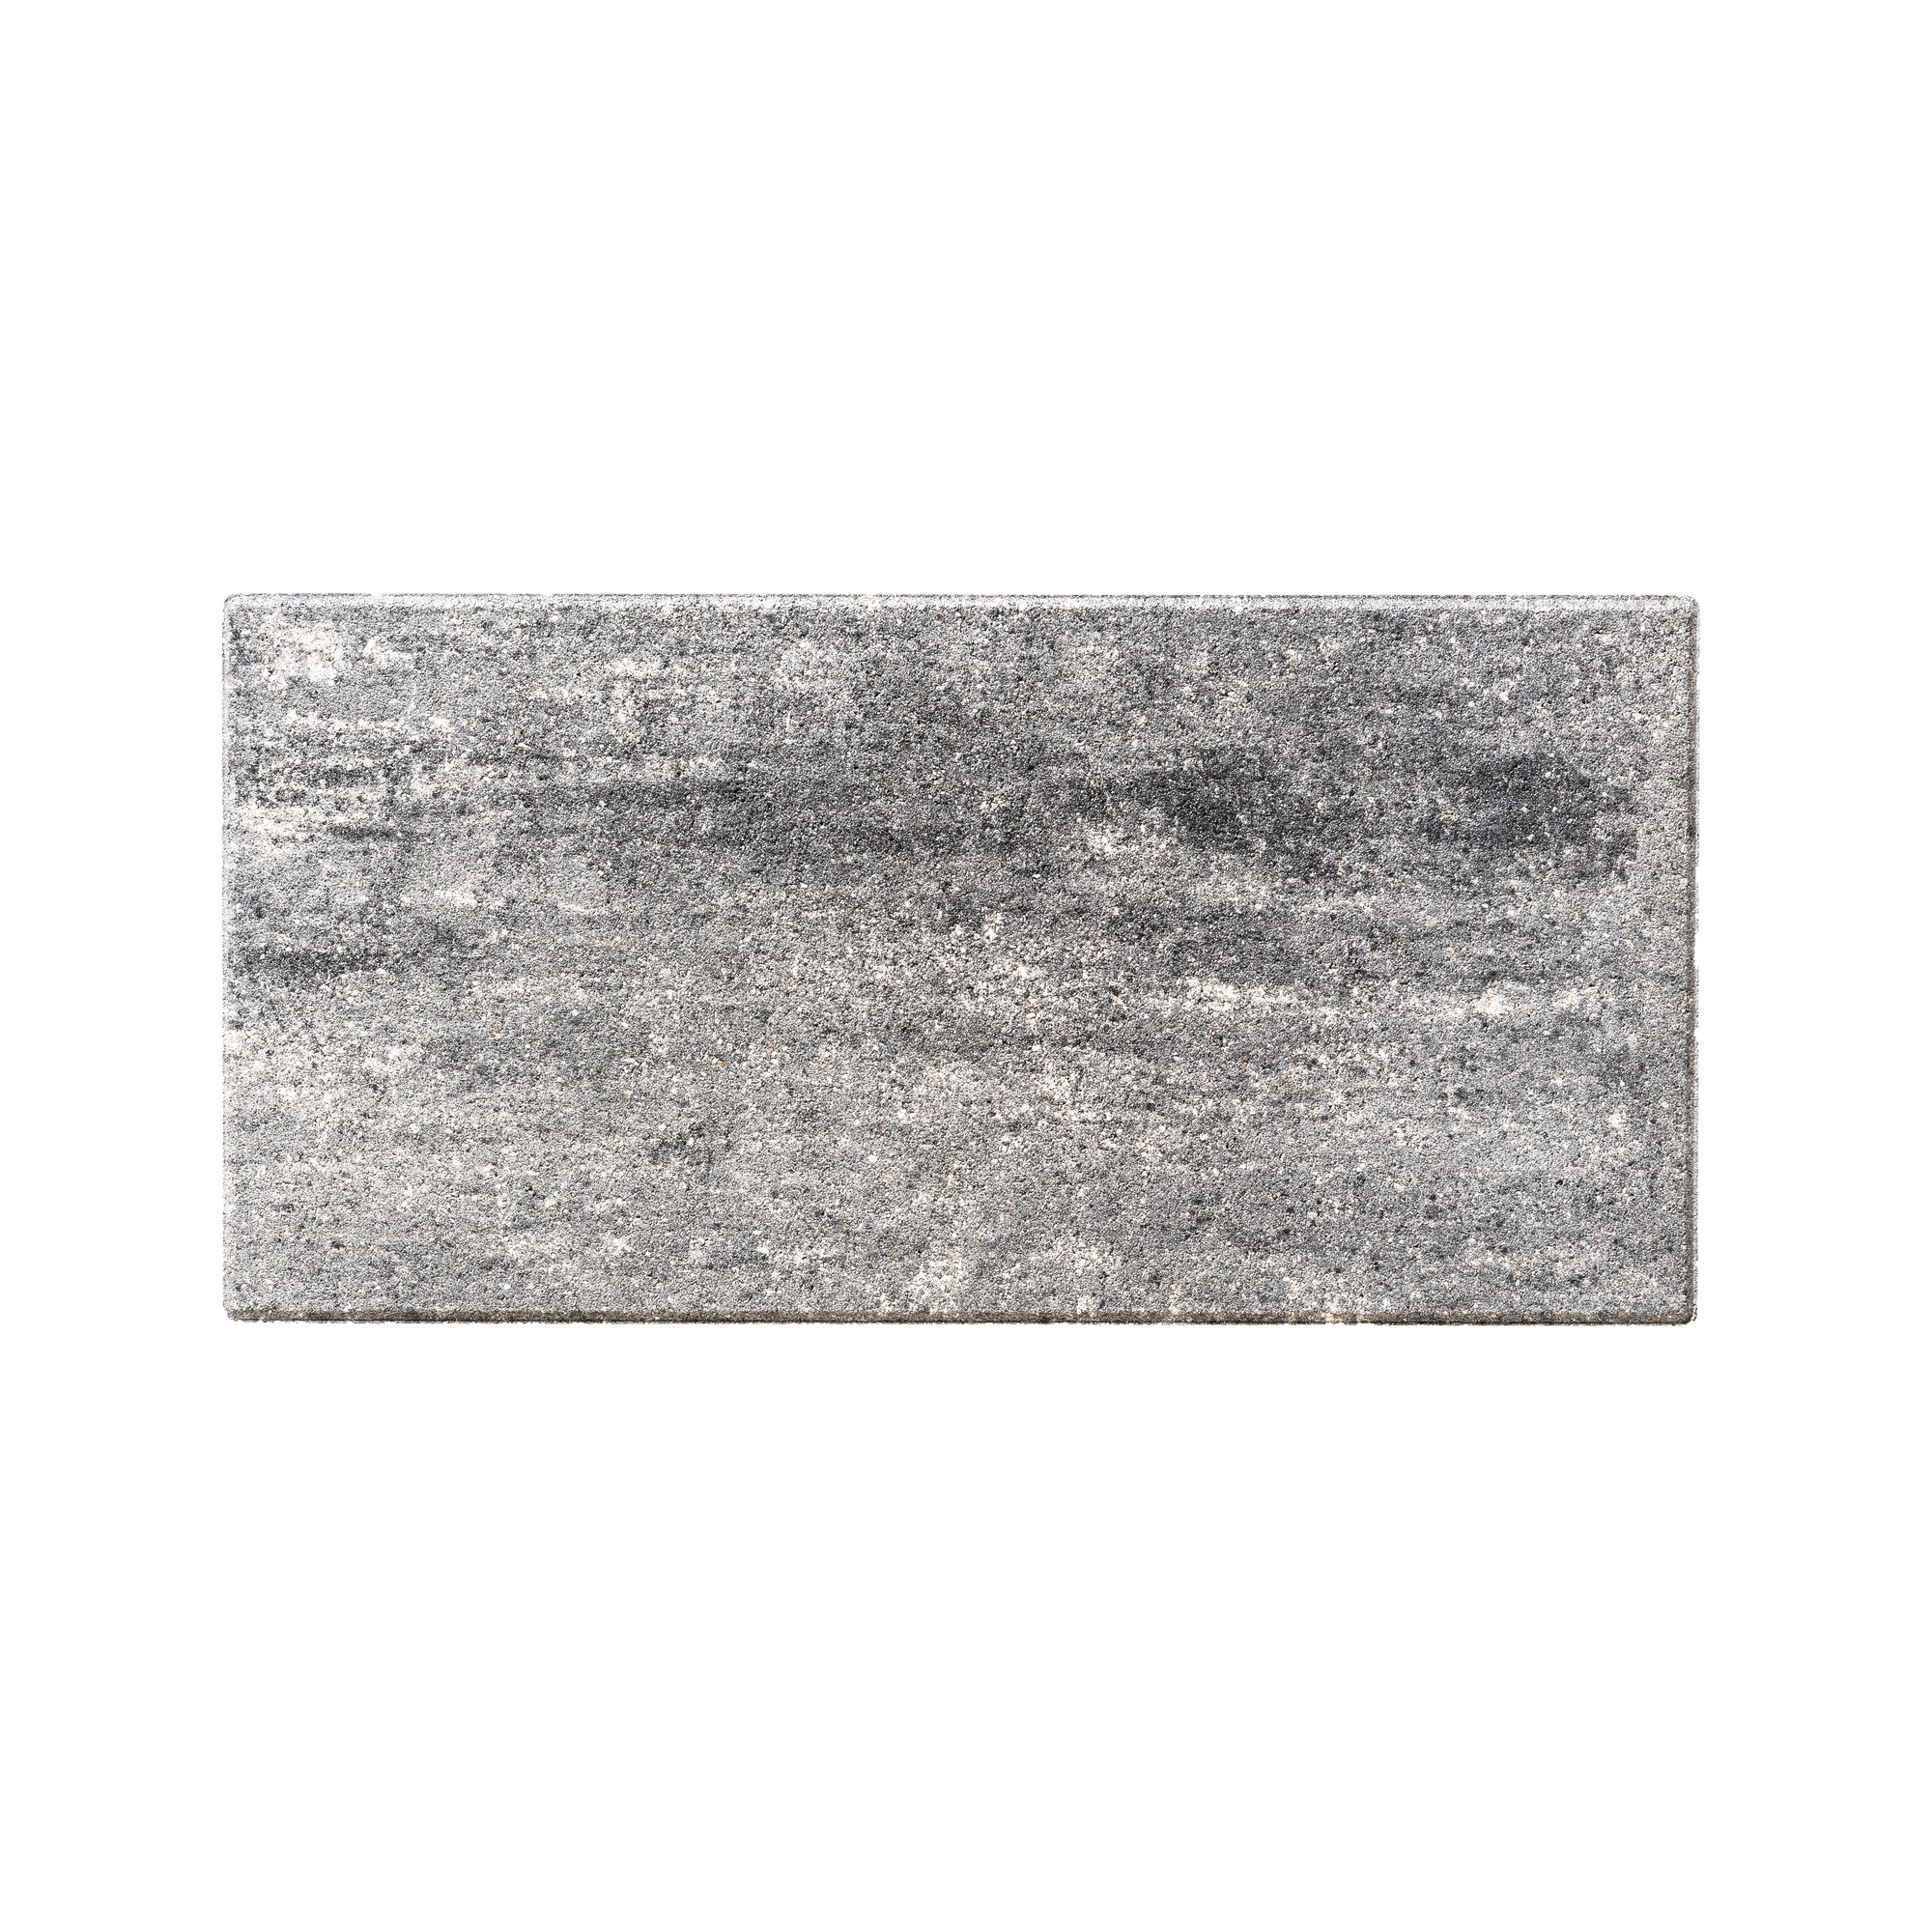 Terrassenplatte 'T-Court Solid' Beton schwarz/weiß 60 x 30 x 4 cm + product picture